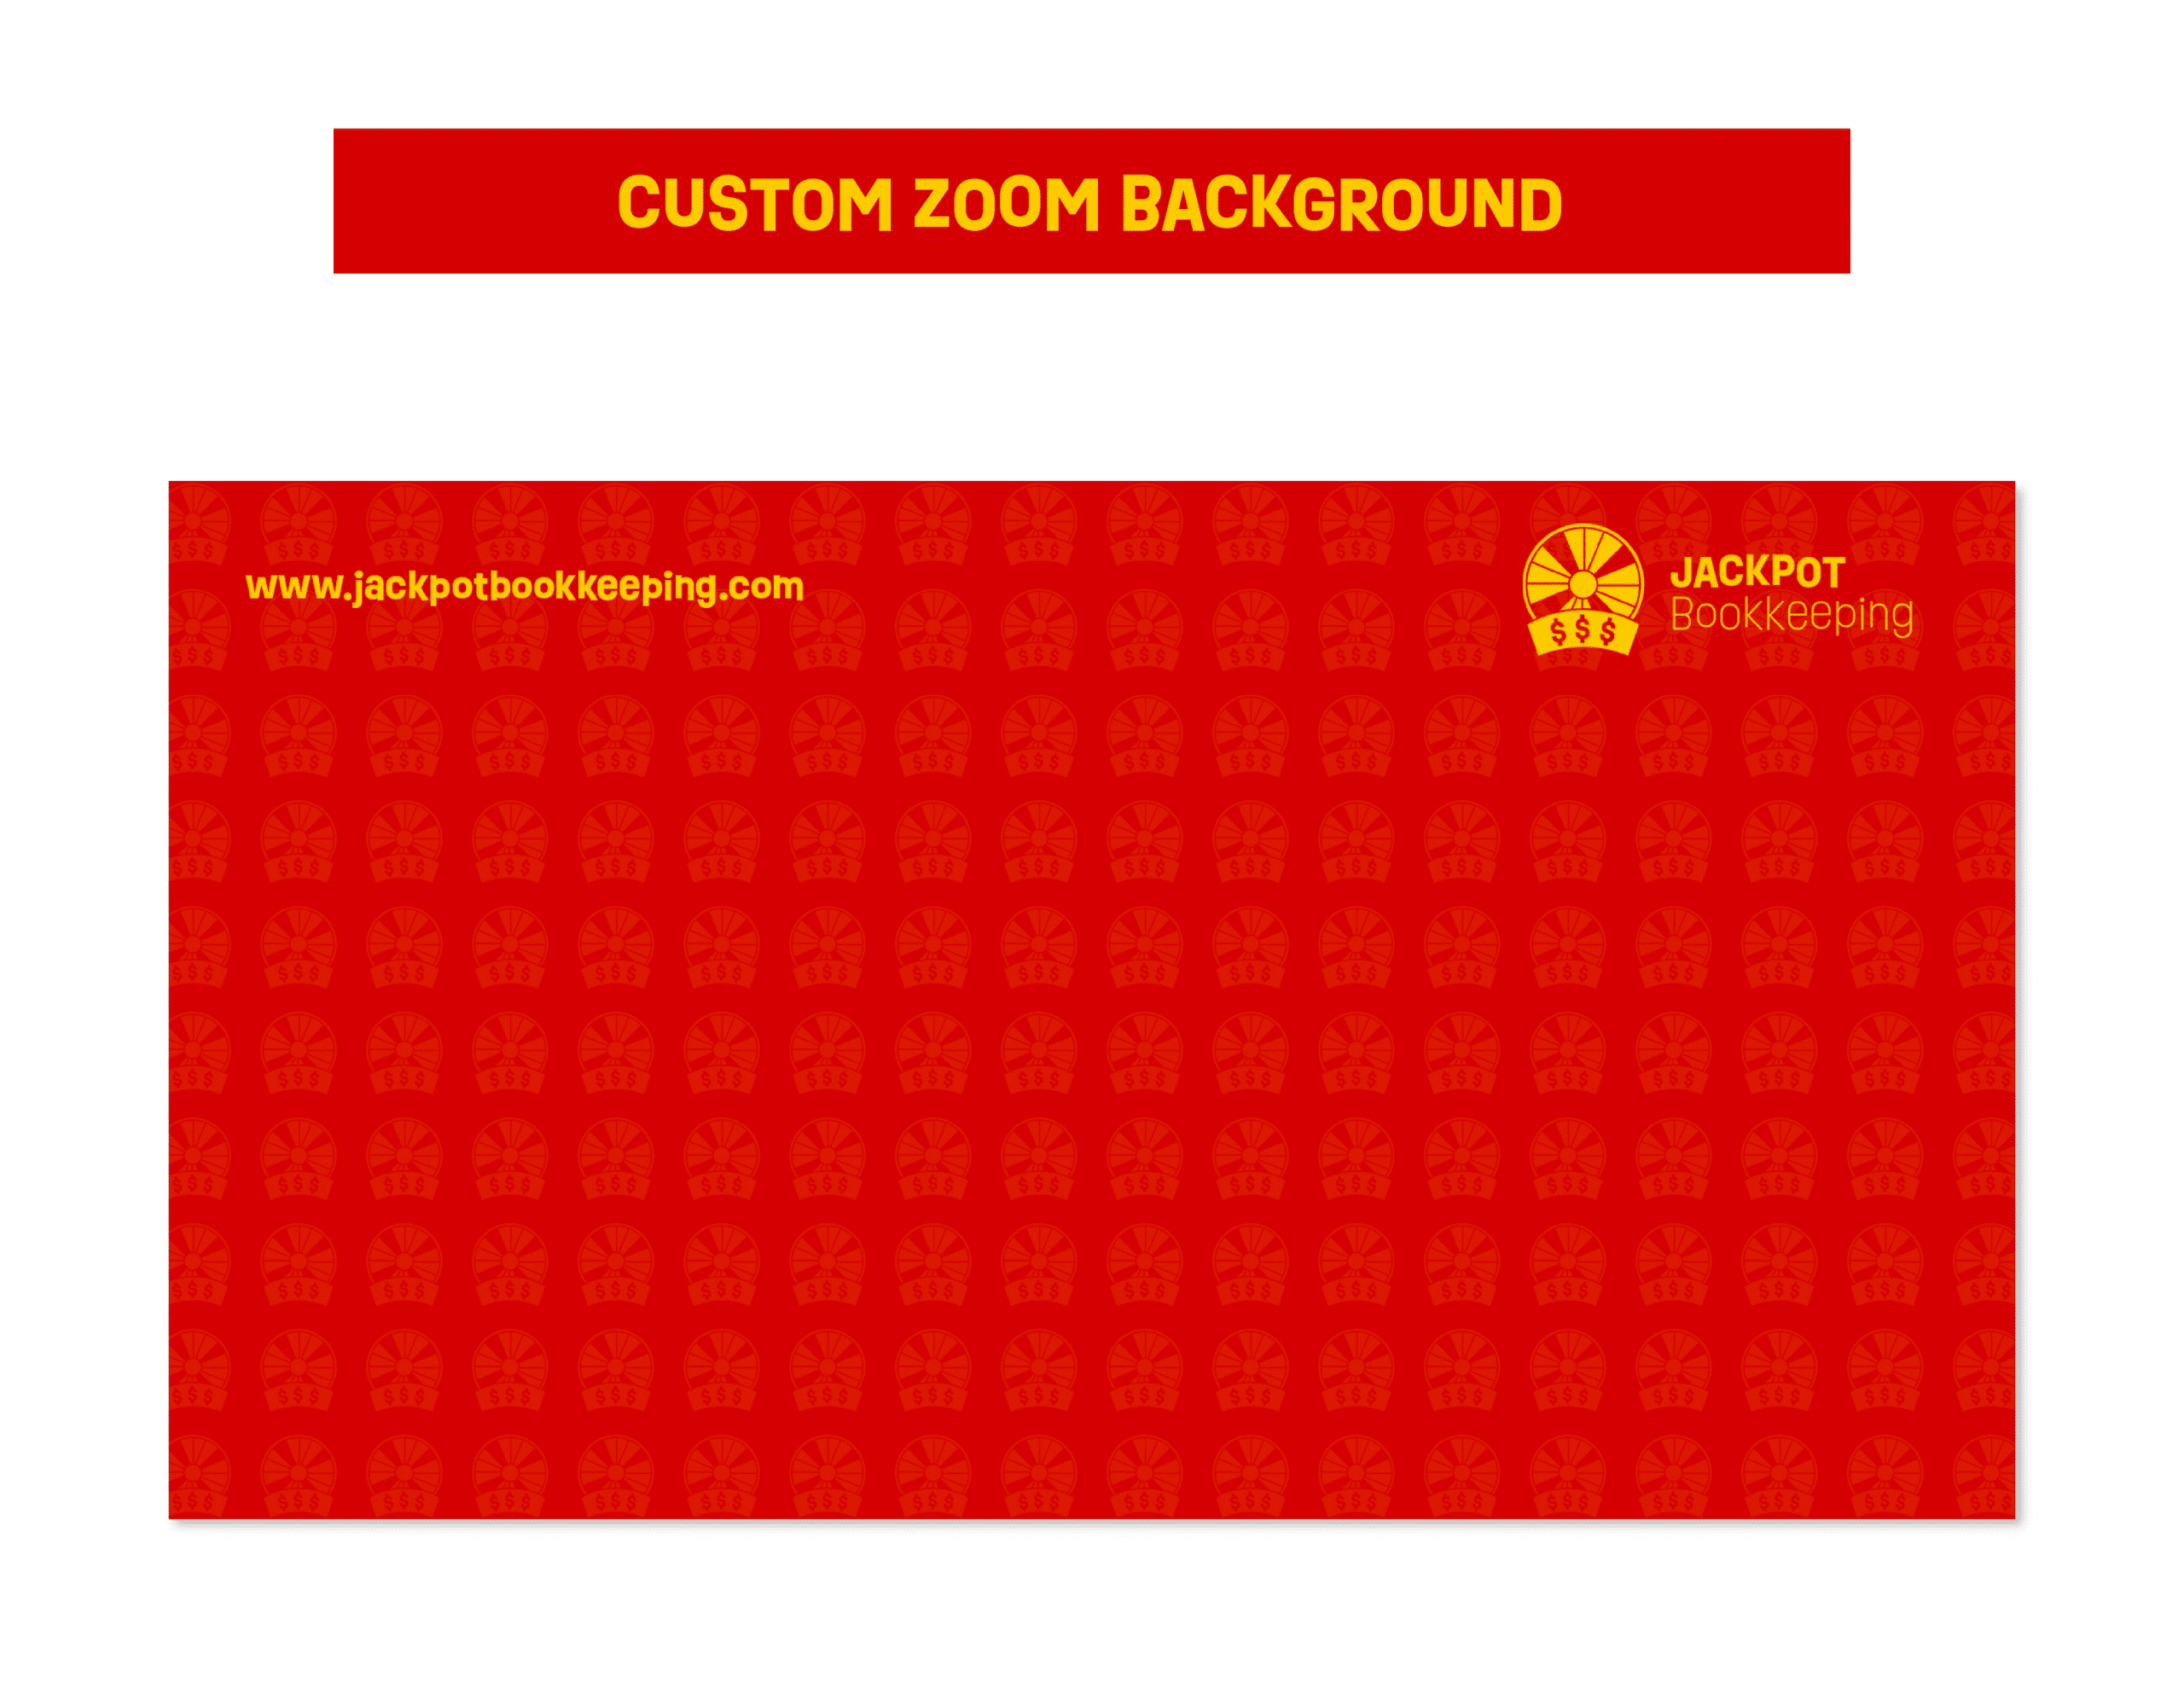 07JackpotBK_Showcase_Custom Zoom Background